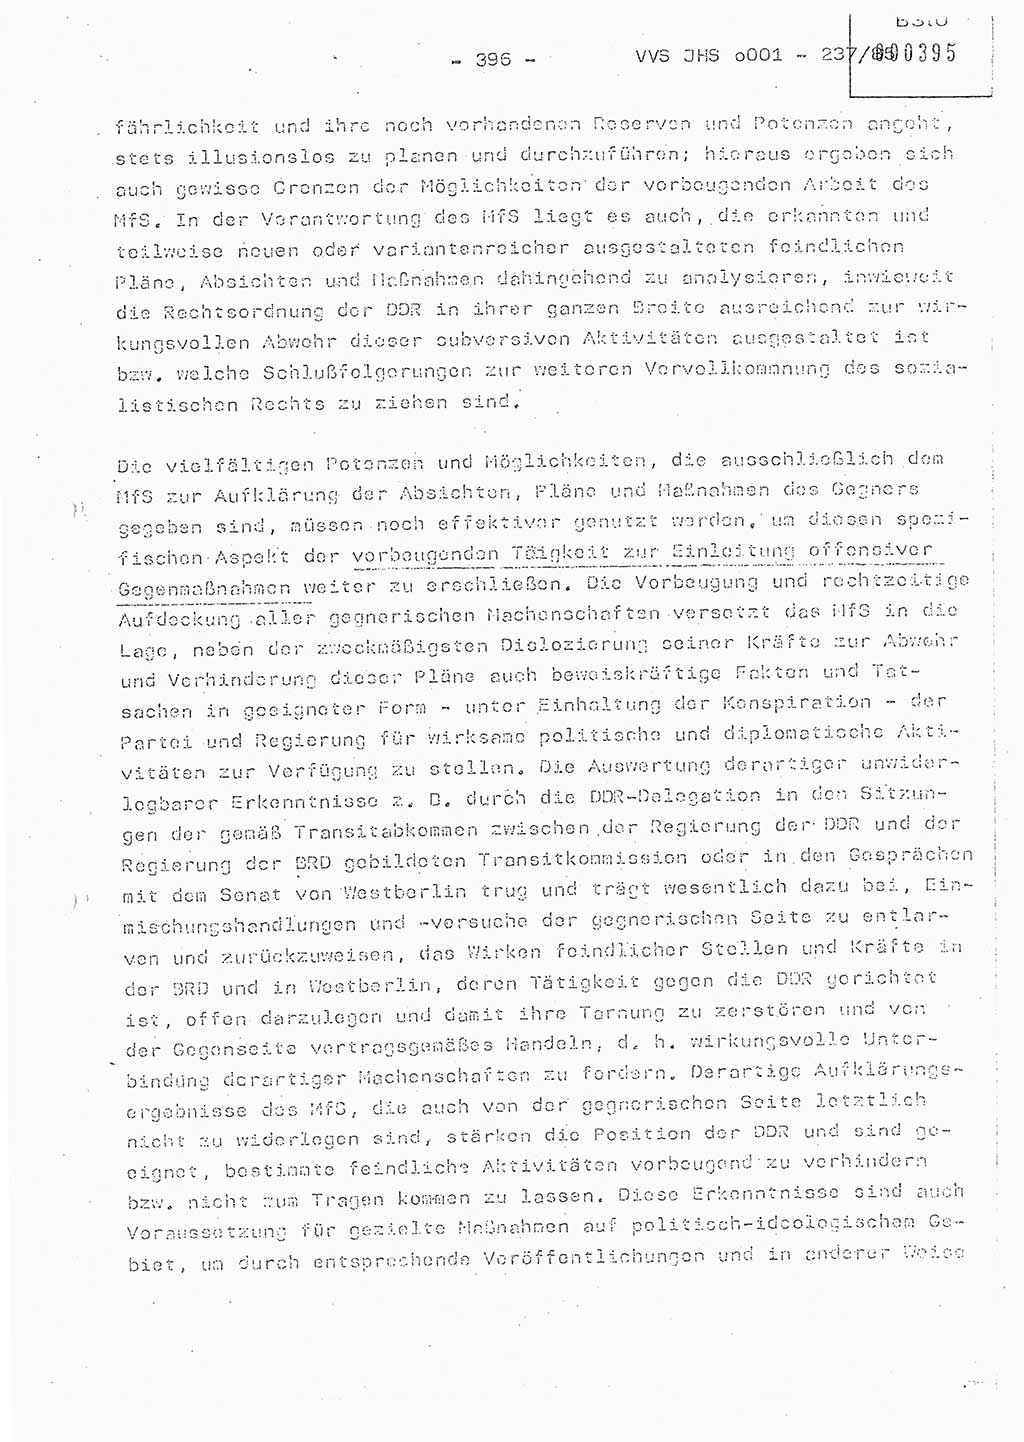 Dissertation Oberstleutnant Peter Jakulski (JHS), Oberstleutnat Christian Rudolph (HA Ⅸ), Major Horst Böttger (ZMD), Major Wolfgang Grüneberg (JHS), Major Albert Meutsch (JHS), Ministerium für Staatssicherheit (MfS) [Deutsche Demokratische Republik (DDR)], Juristische Hochschule (JHS), Vertrauliche Verschlußsache (VVS) o001-237/85, Potsdam 1985, Seite 396 (Diss. MfS DDR JHS VVS o001-237/85 1985, S. 396)